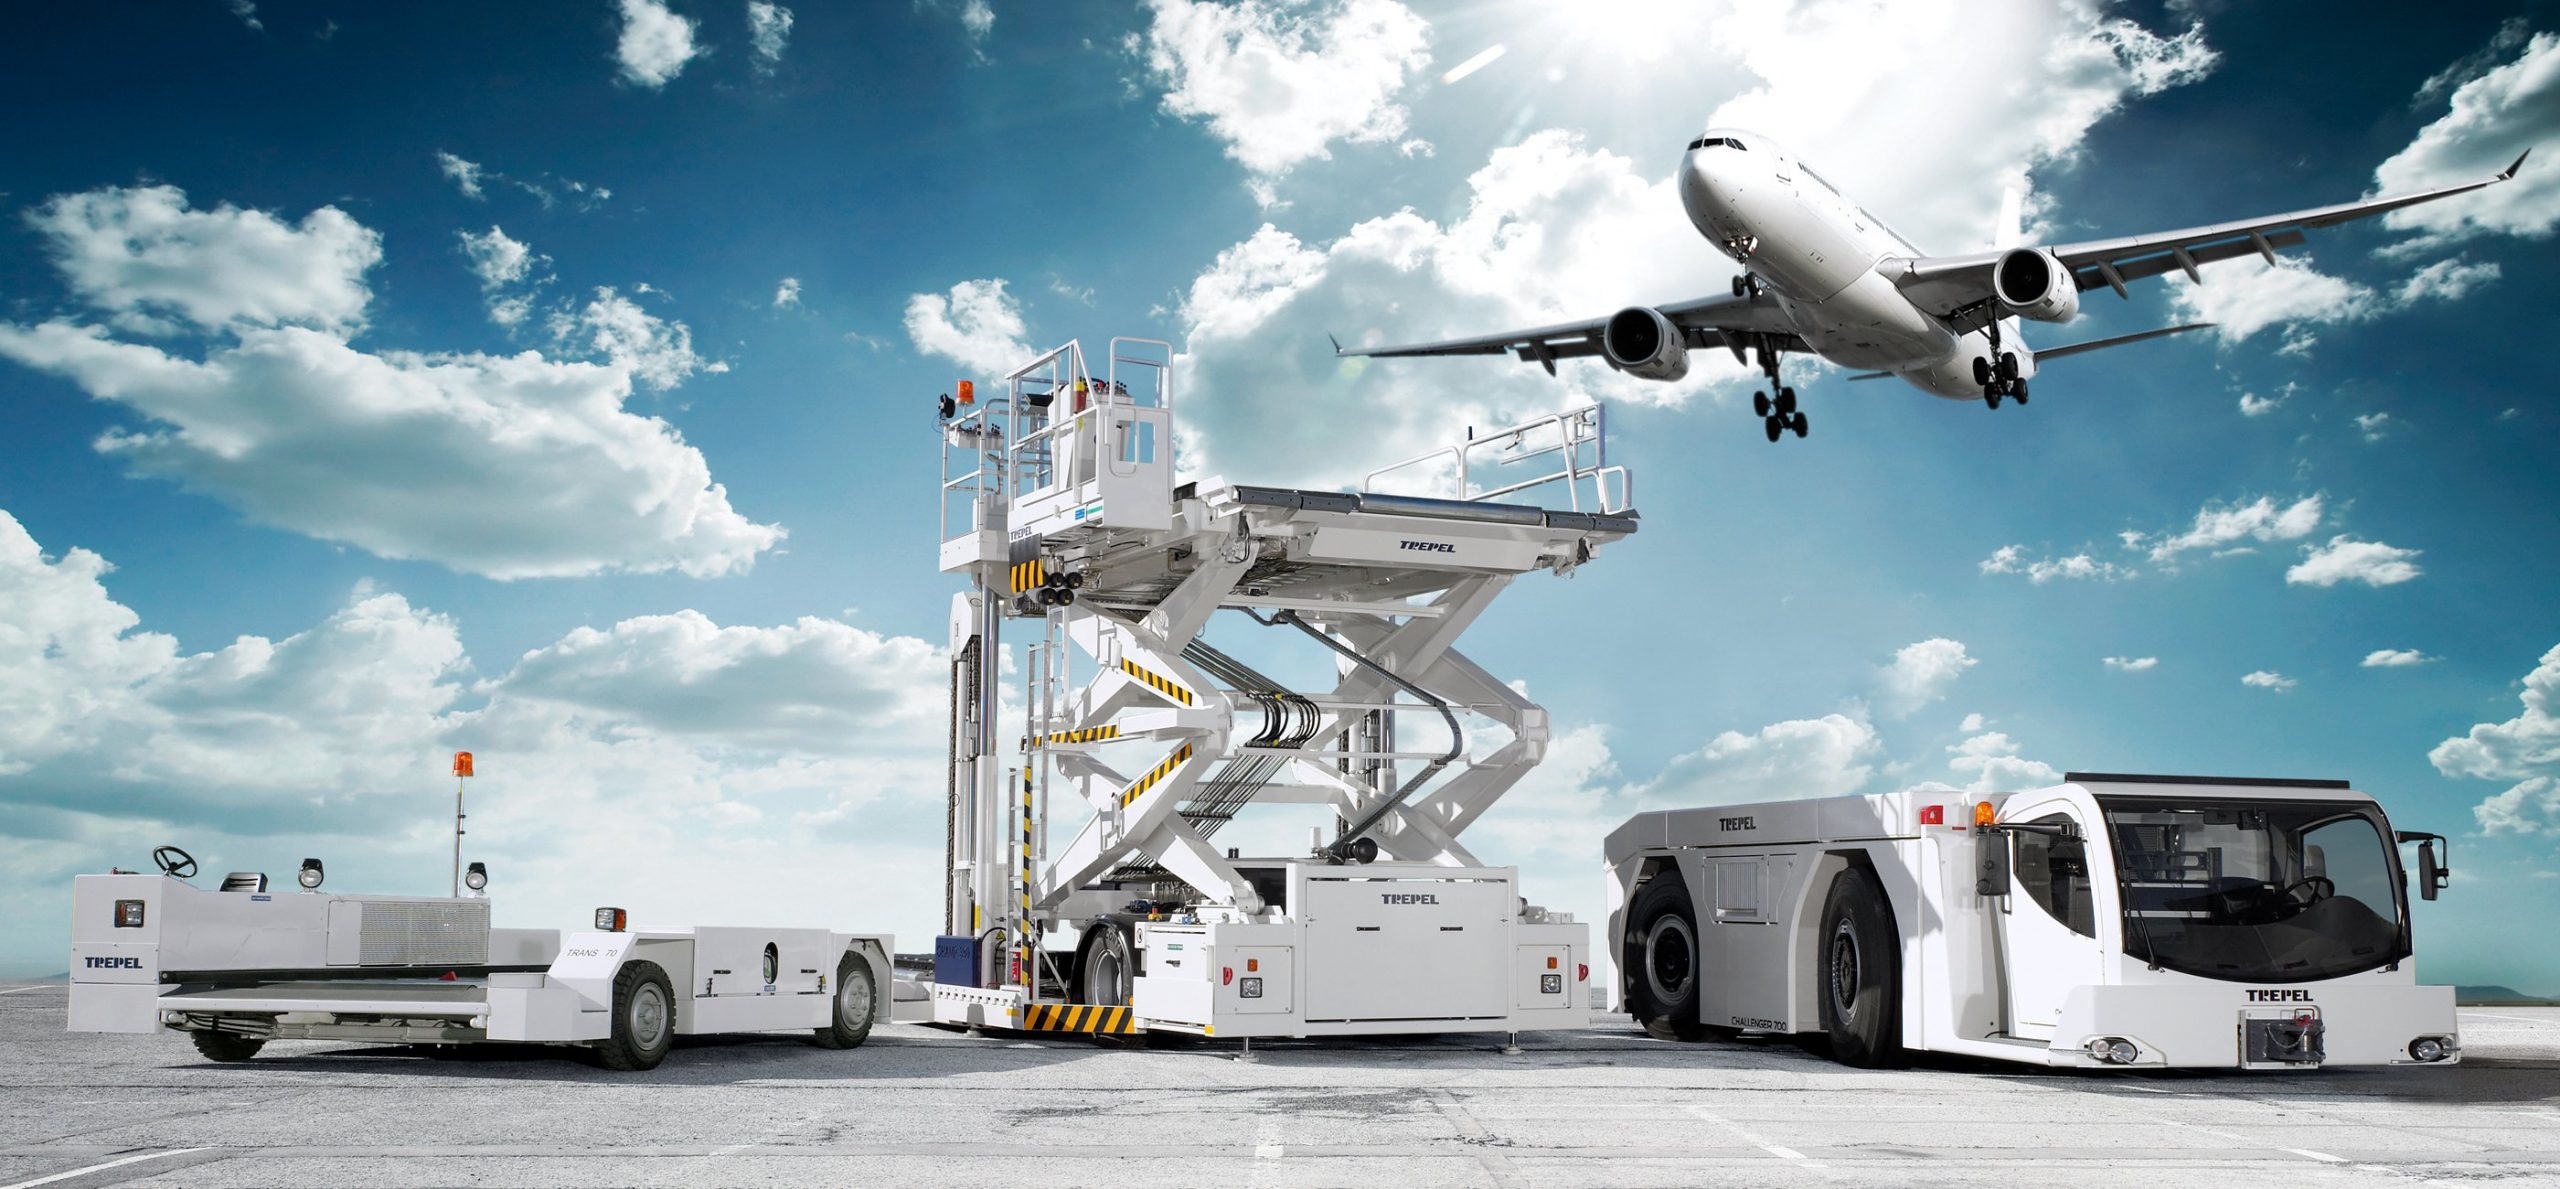 Global Airport Stands Equipment Market Development Status 2019 – 2023 : John Bean Technologies, Mallaghan, Thyssenkrupp Airport Systems